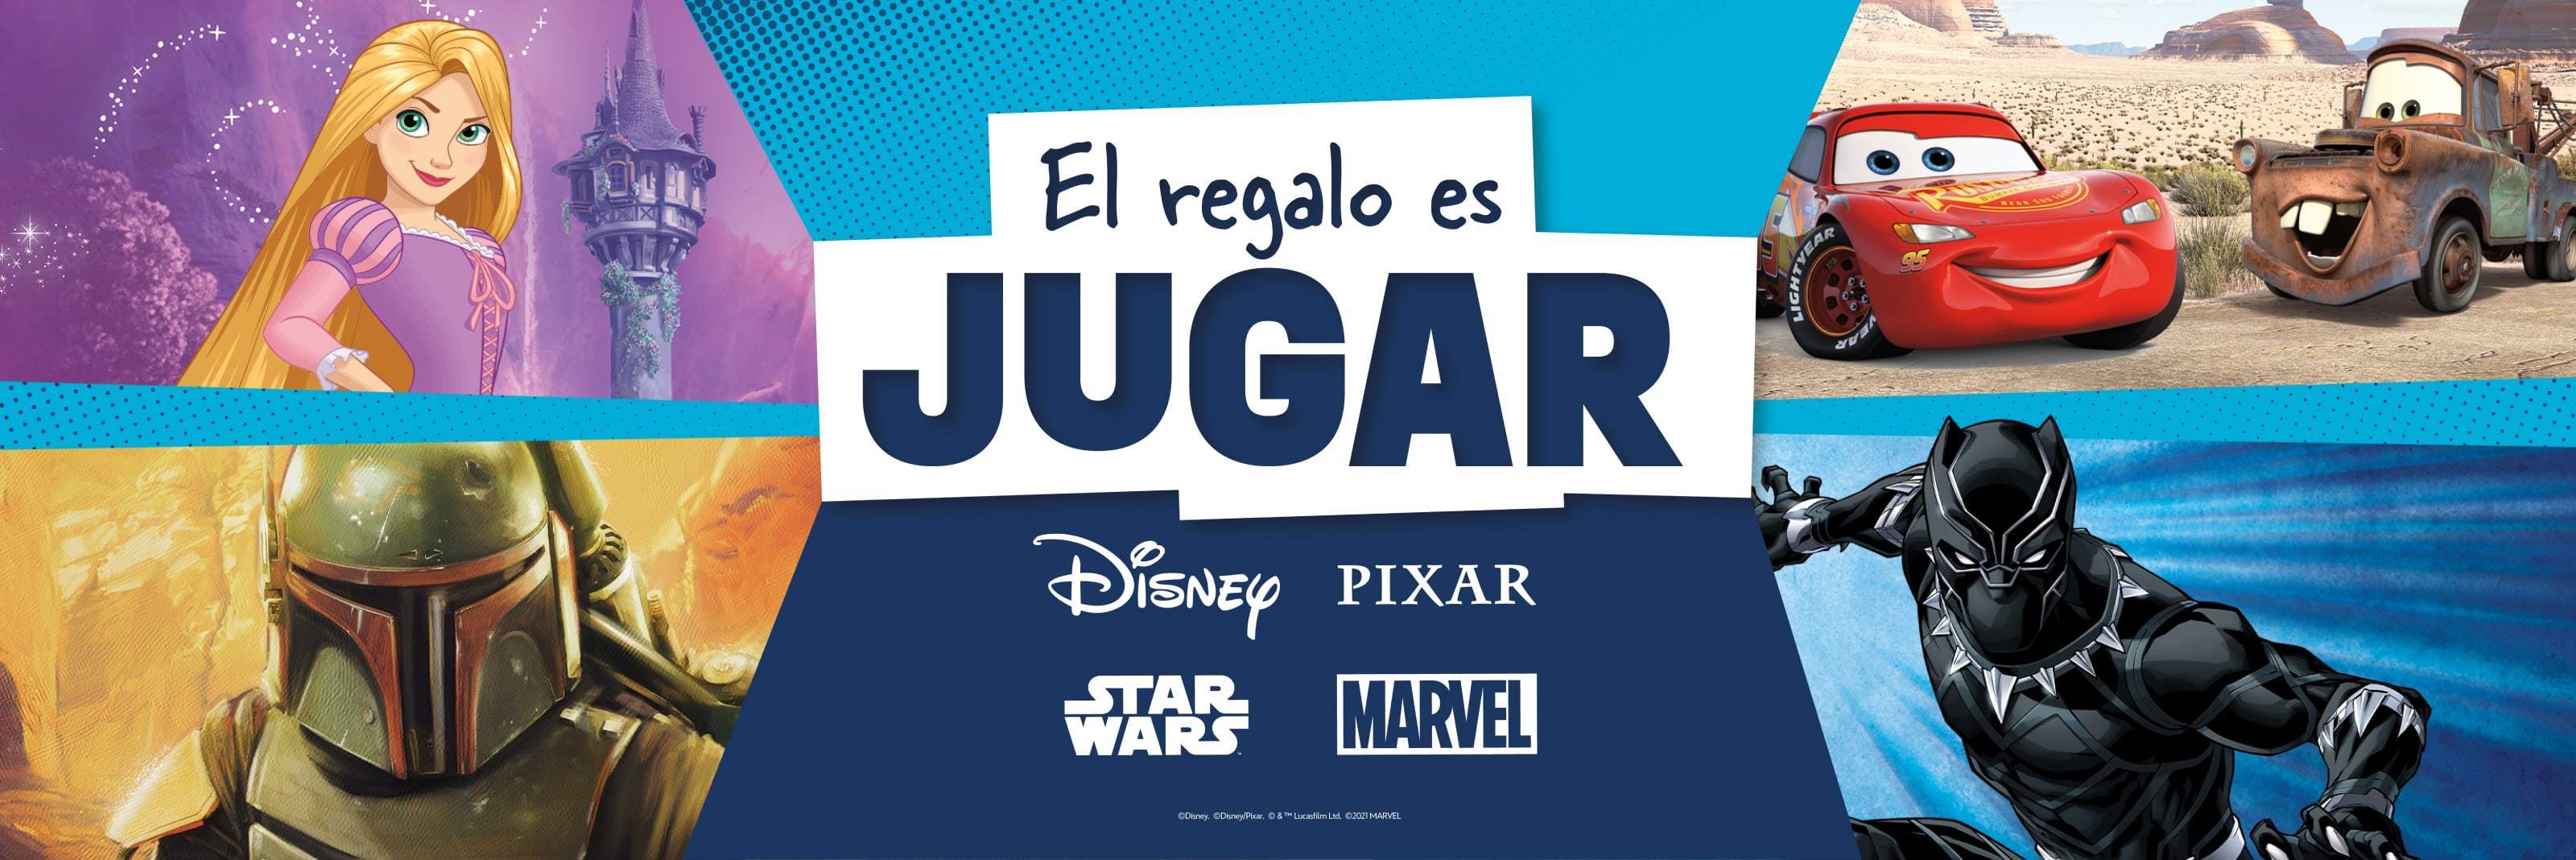 Personajes de Disney, Pixar, Star Wars y Marvel frente a un fondo azul con logos de marcas en el centro